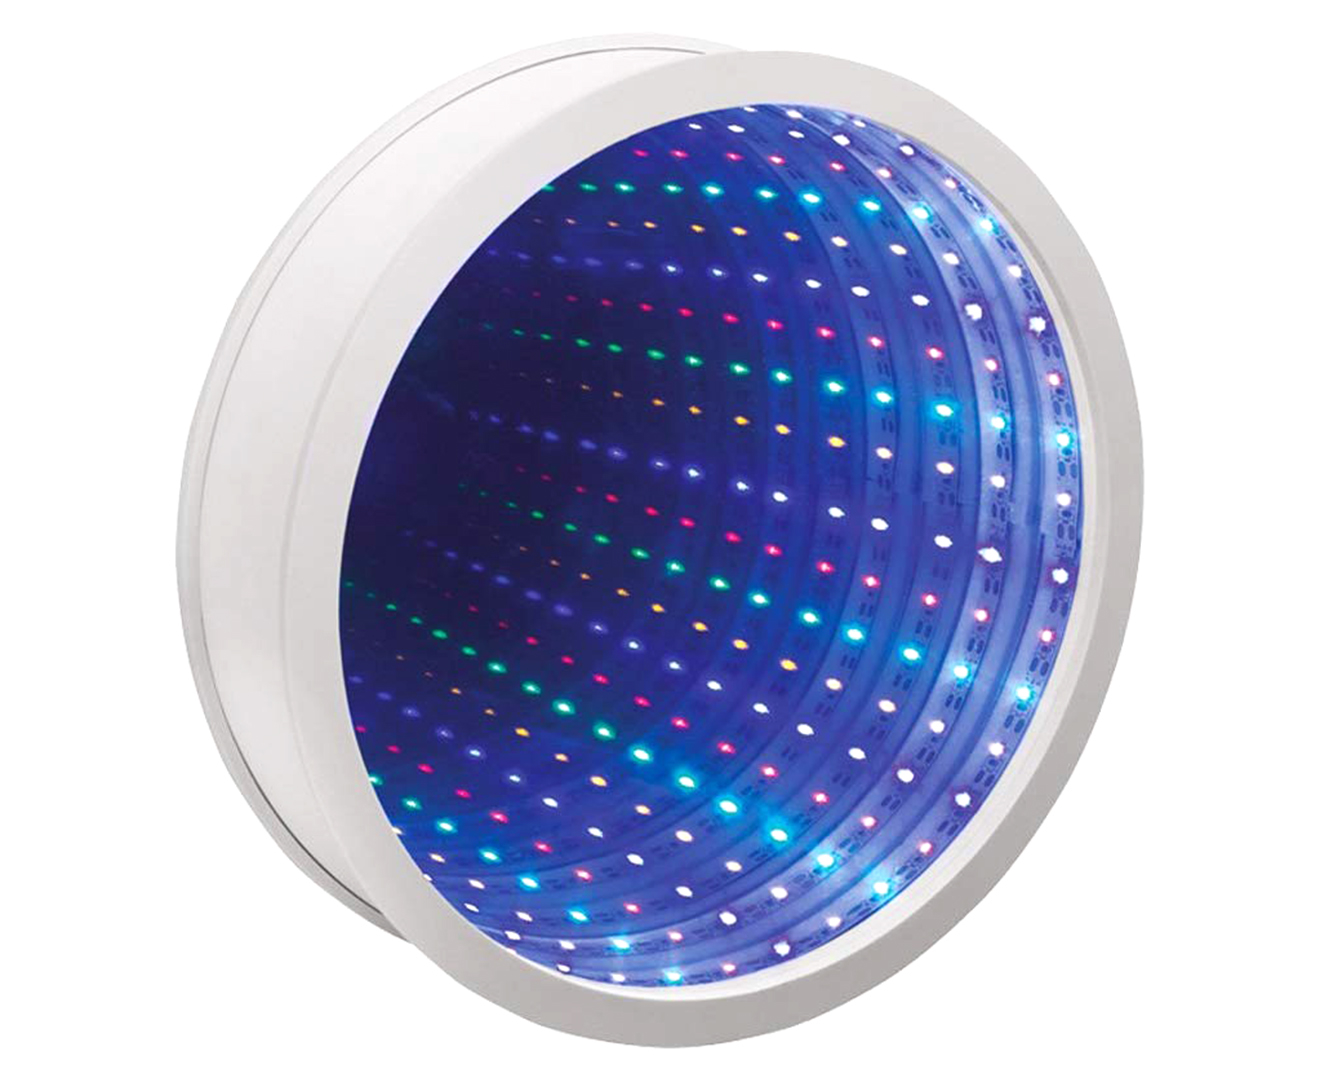 Led space. Infinity Mirror фонари. Интерактивные световые панели для сенсорных комнат. Световое панно для сенсорной комнаты. Светодиодная лента для сенсорной комнаты.